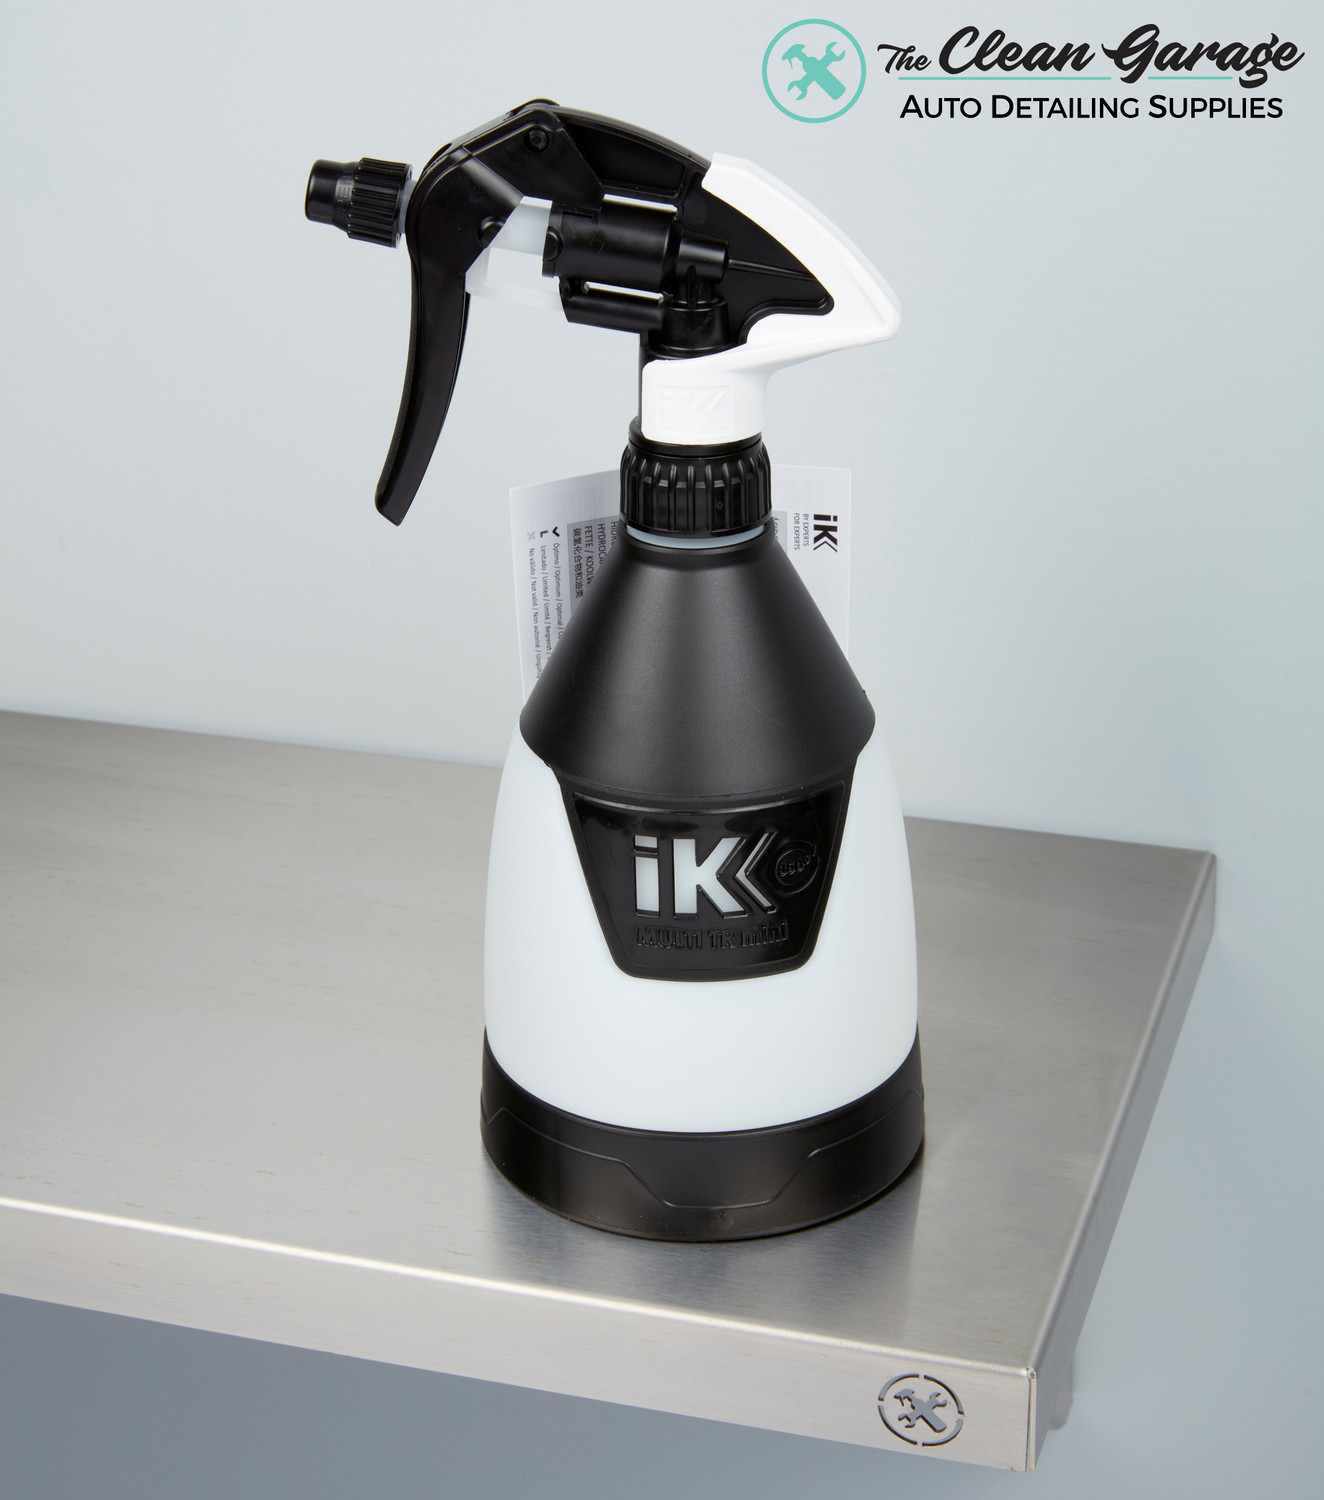 IK Sprayer Parts & Accessories